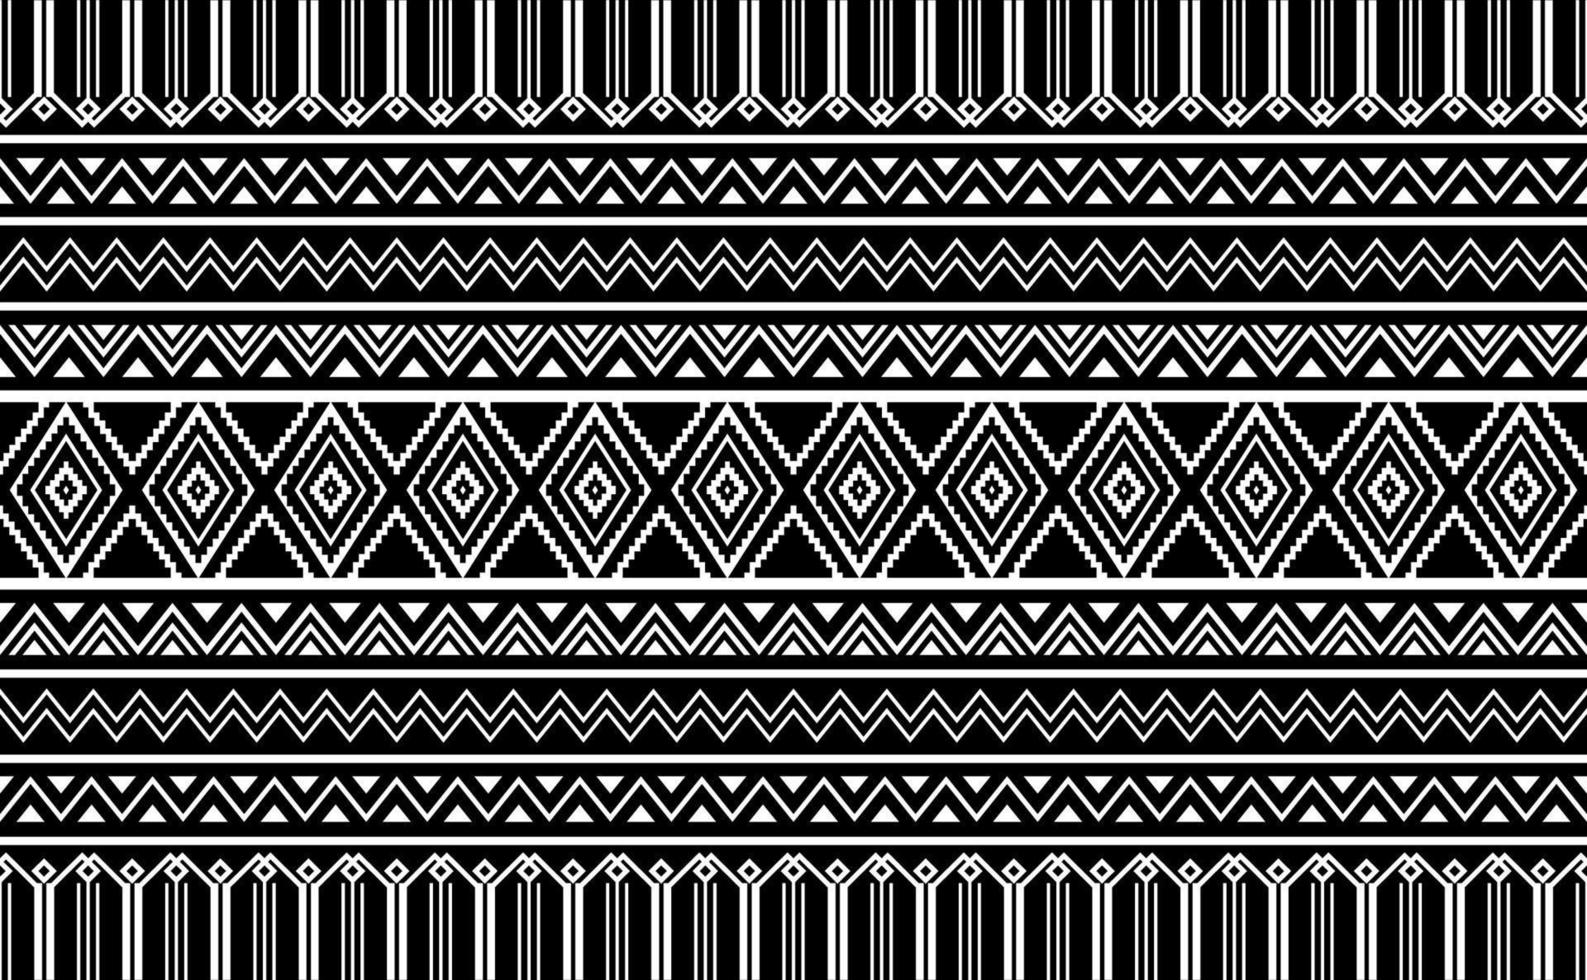 vecteur de motif ethnique, arrière-plan géométrique abstrait harmonieux, motif tribal en tissu noir et blanc